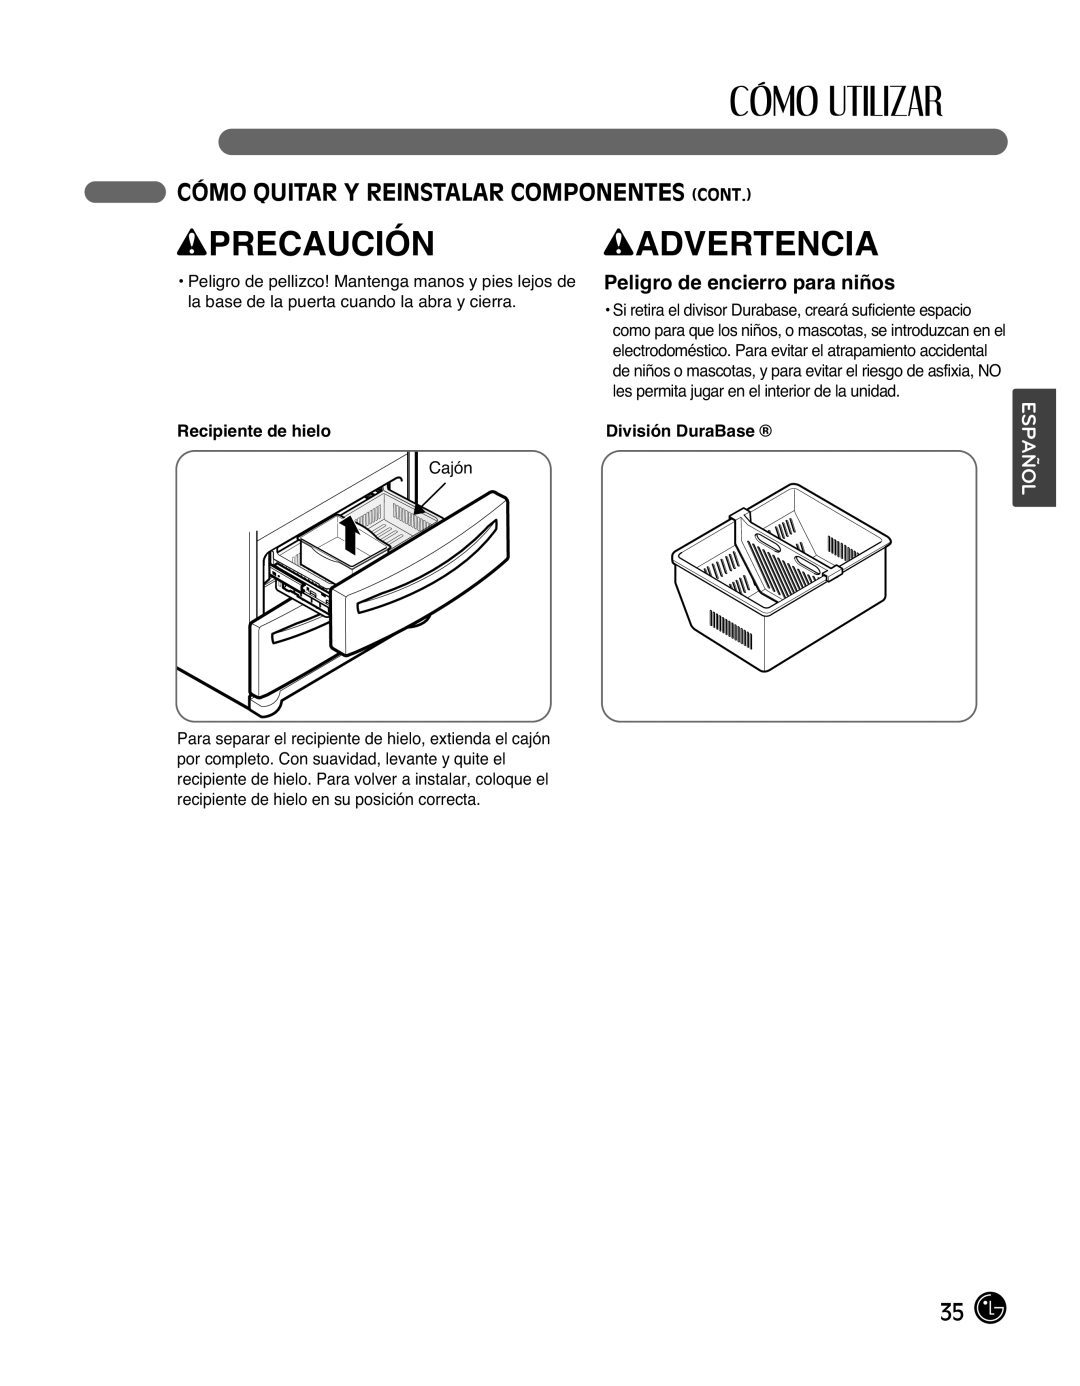 LG Electronics LMX25988ST owner manual Peligro de encierro para niños, wPRECAUCIÓN, wADVERTENCIA, Español 